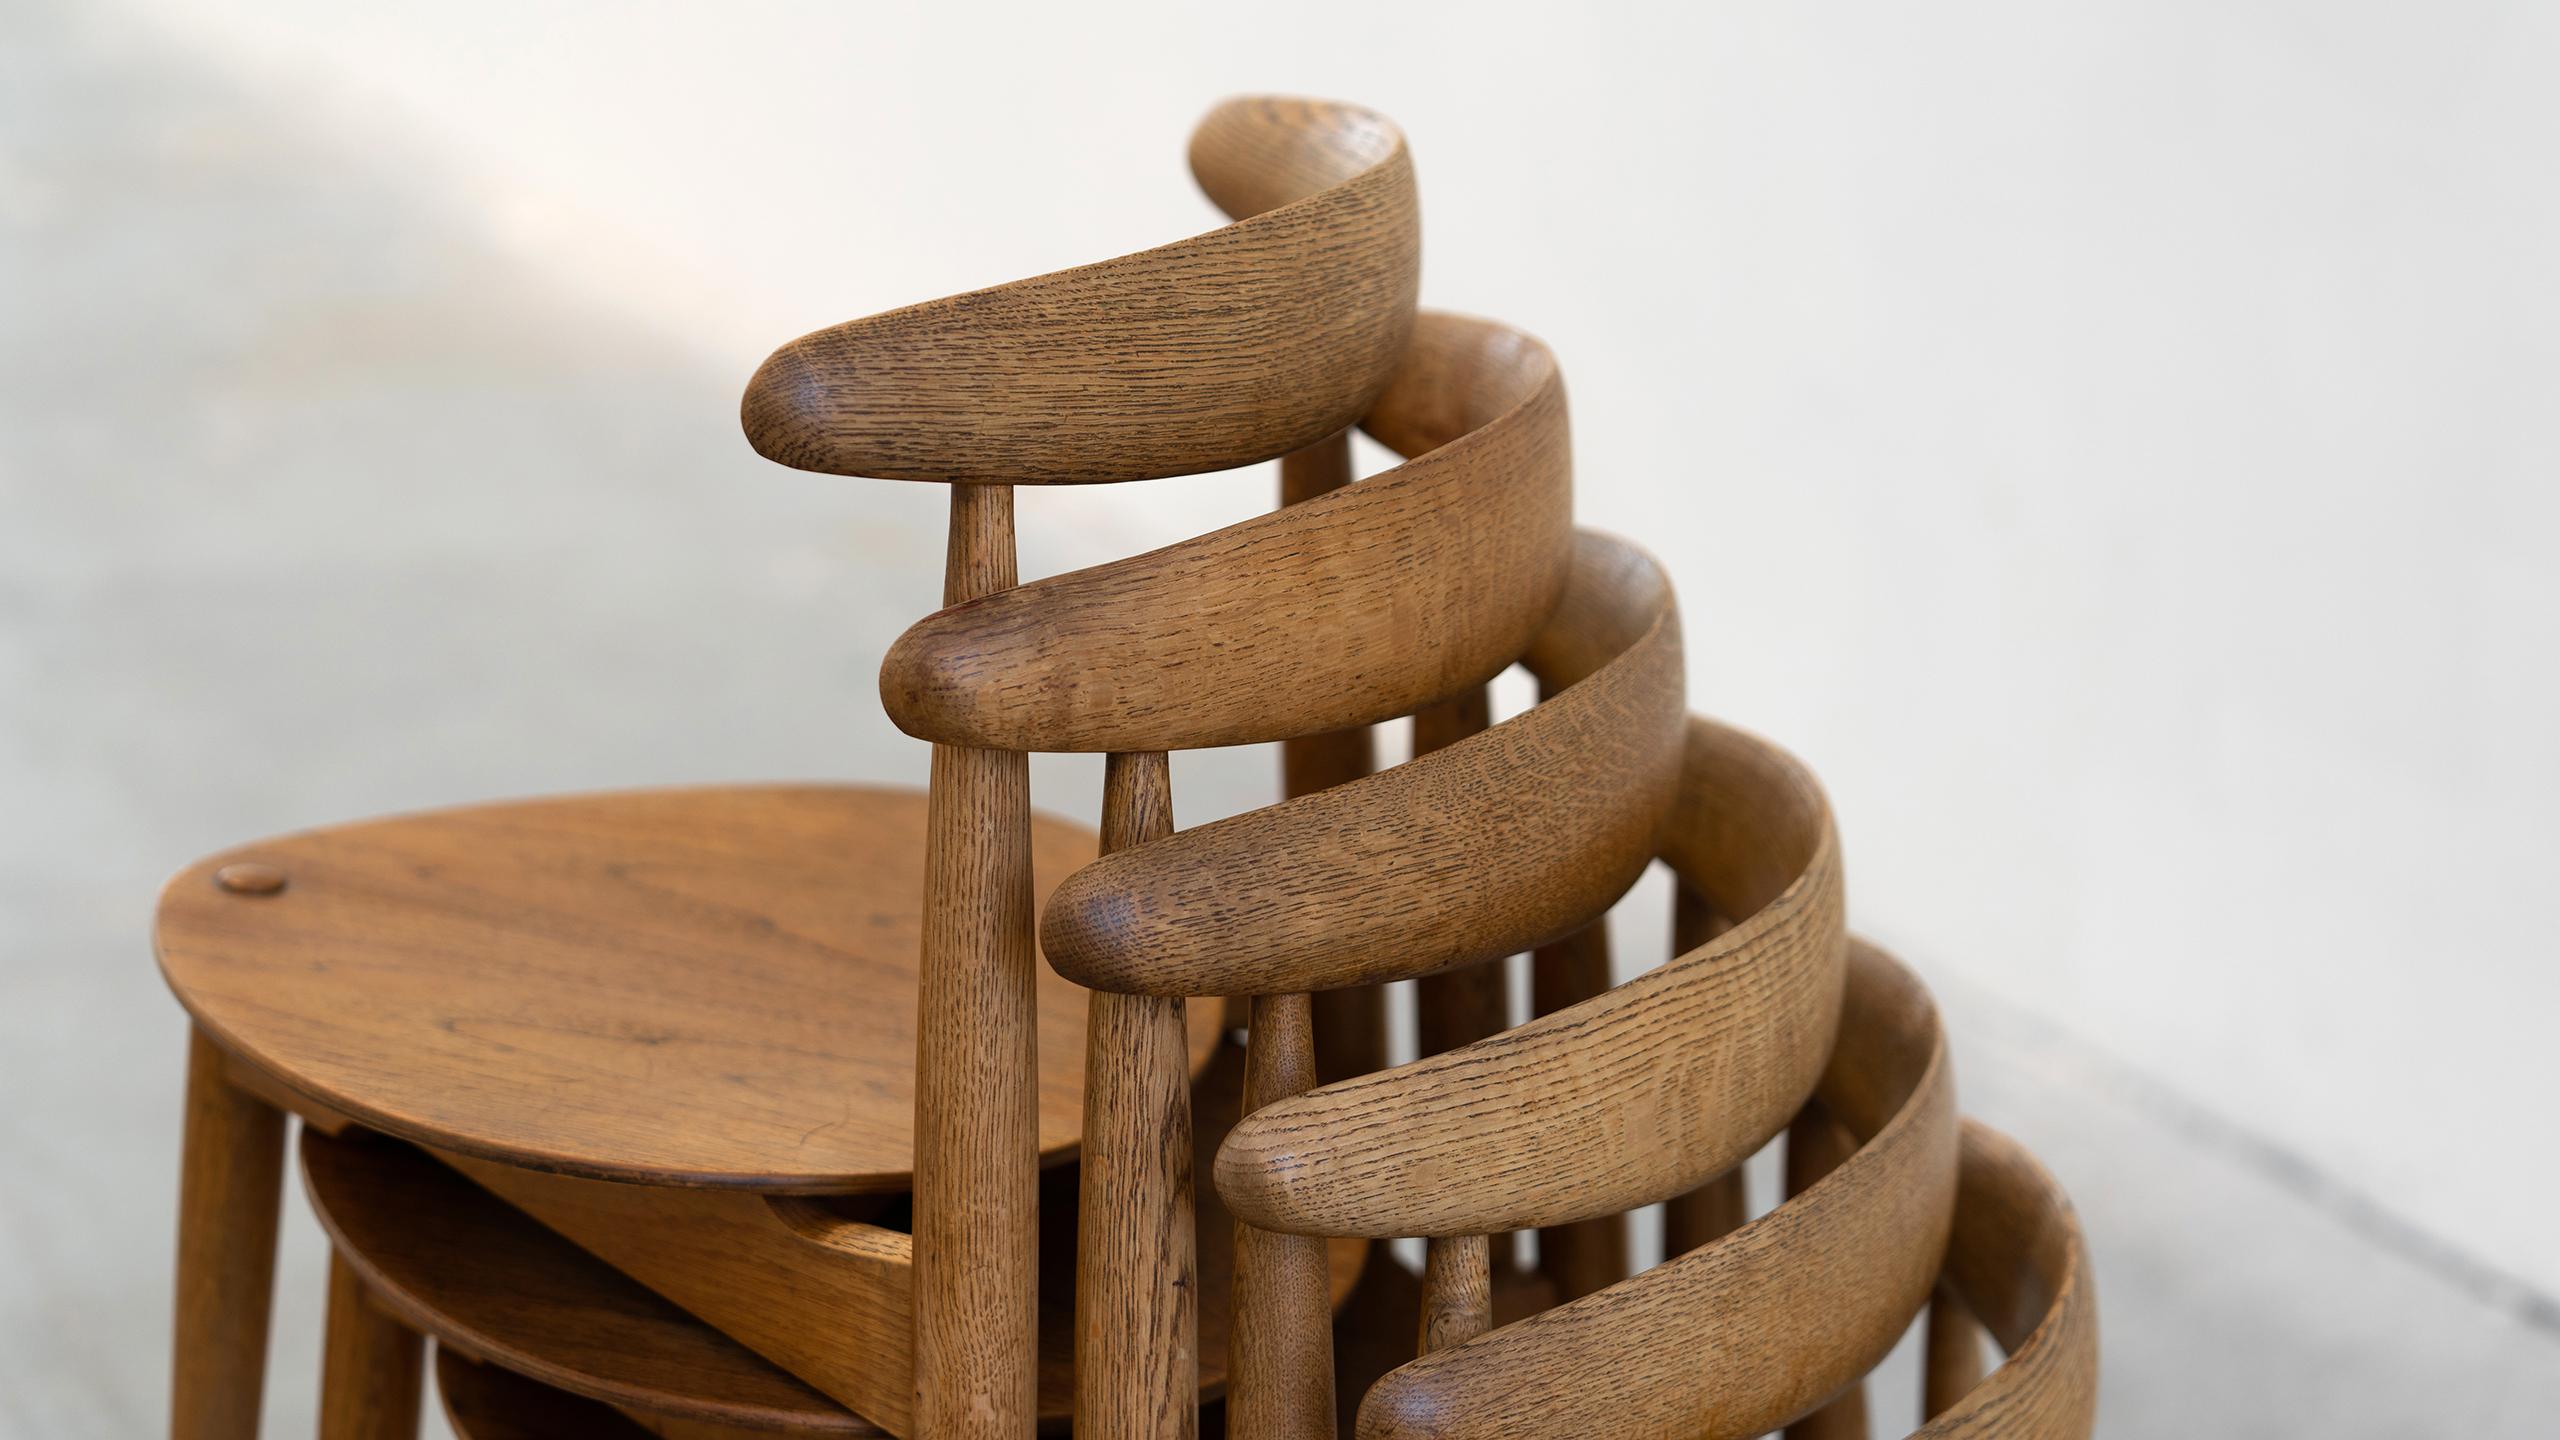 Hans J. Wegner, Dining Group Heart Chair & Table 1958 by Fritz Hansen, Denmark 1